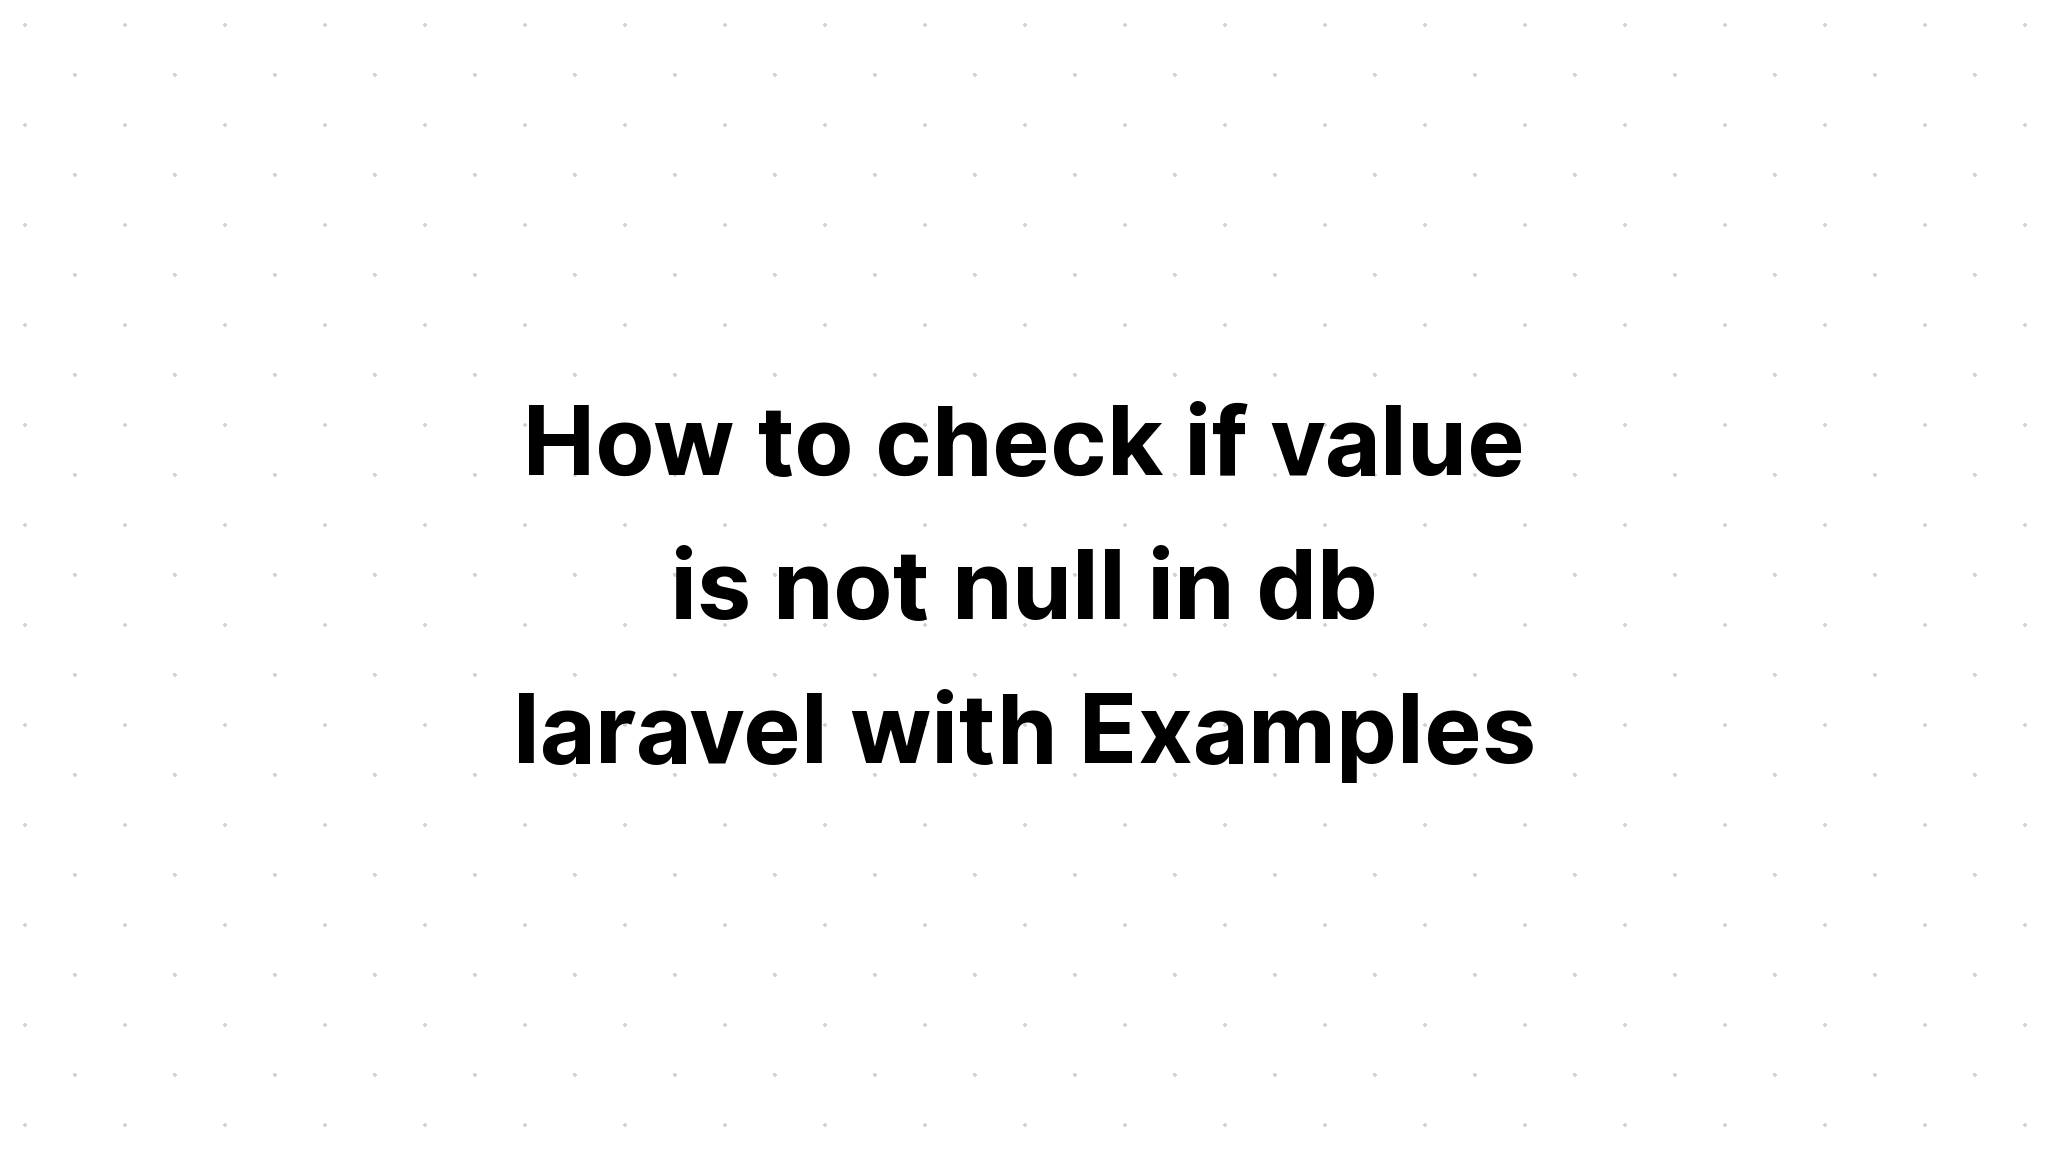 Cách kiểm tra xem giá trị có phải là null trong db laravel hay không với các ví dụ